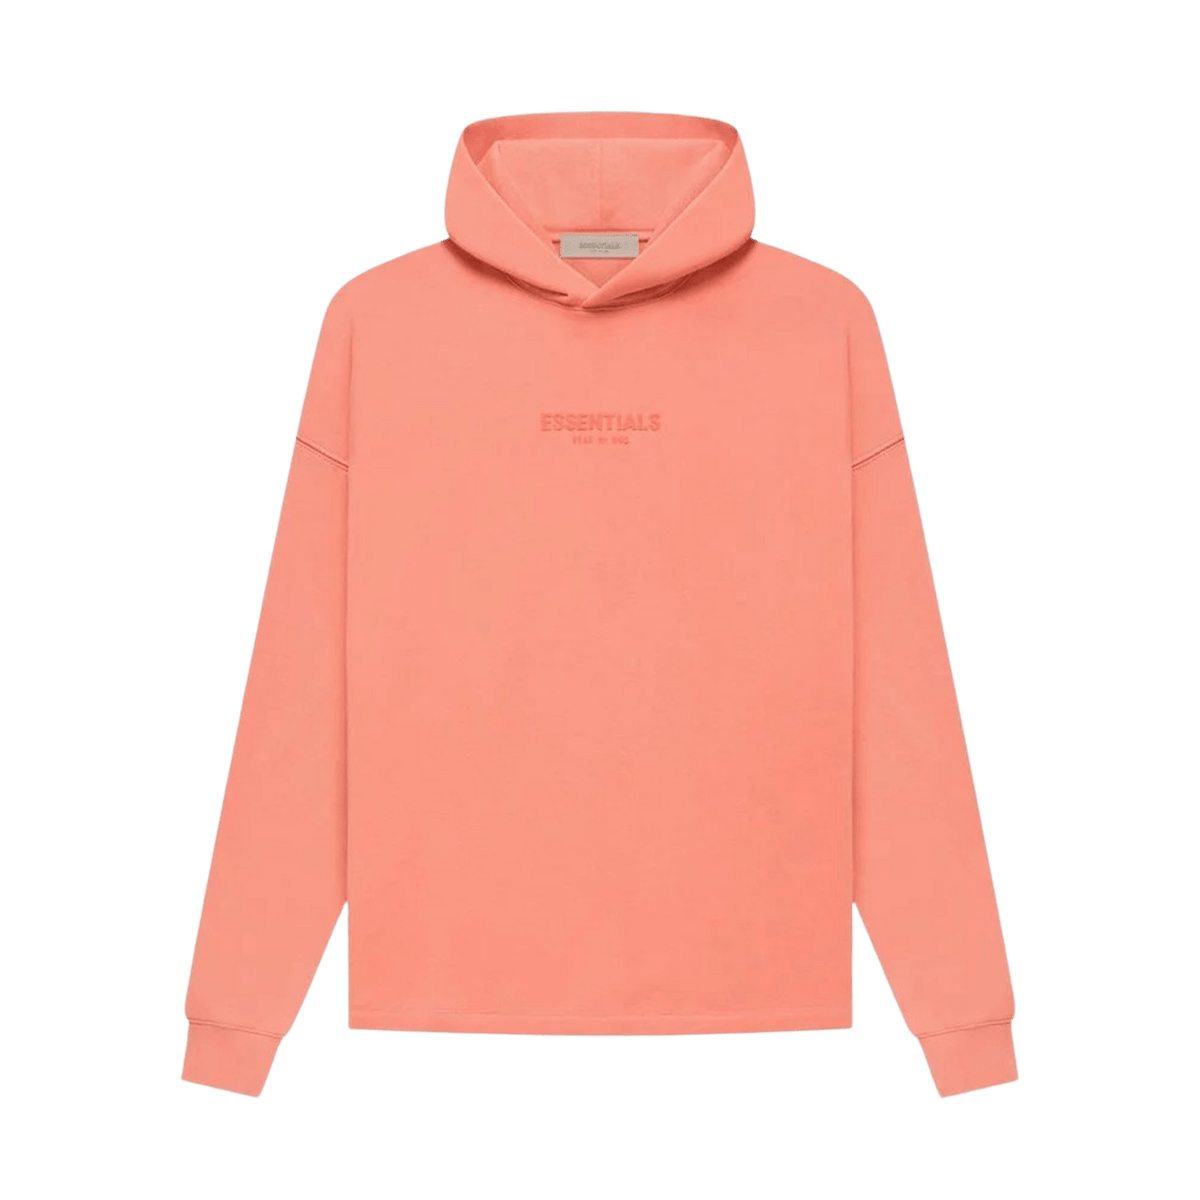 Dsquared2 slogan print sweatshirt Essentials Relaxed Hoodie 'Coral' - JuzsportsShops